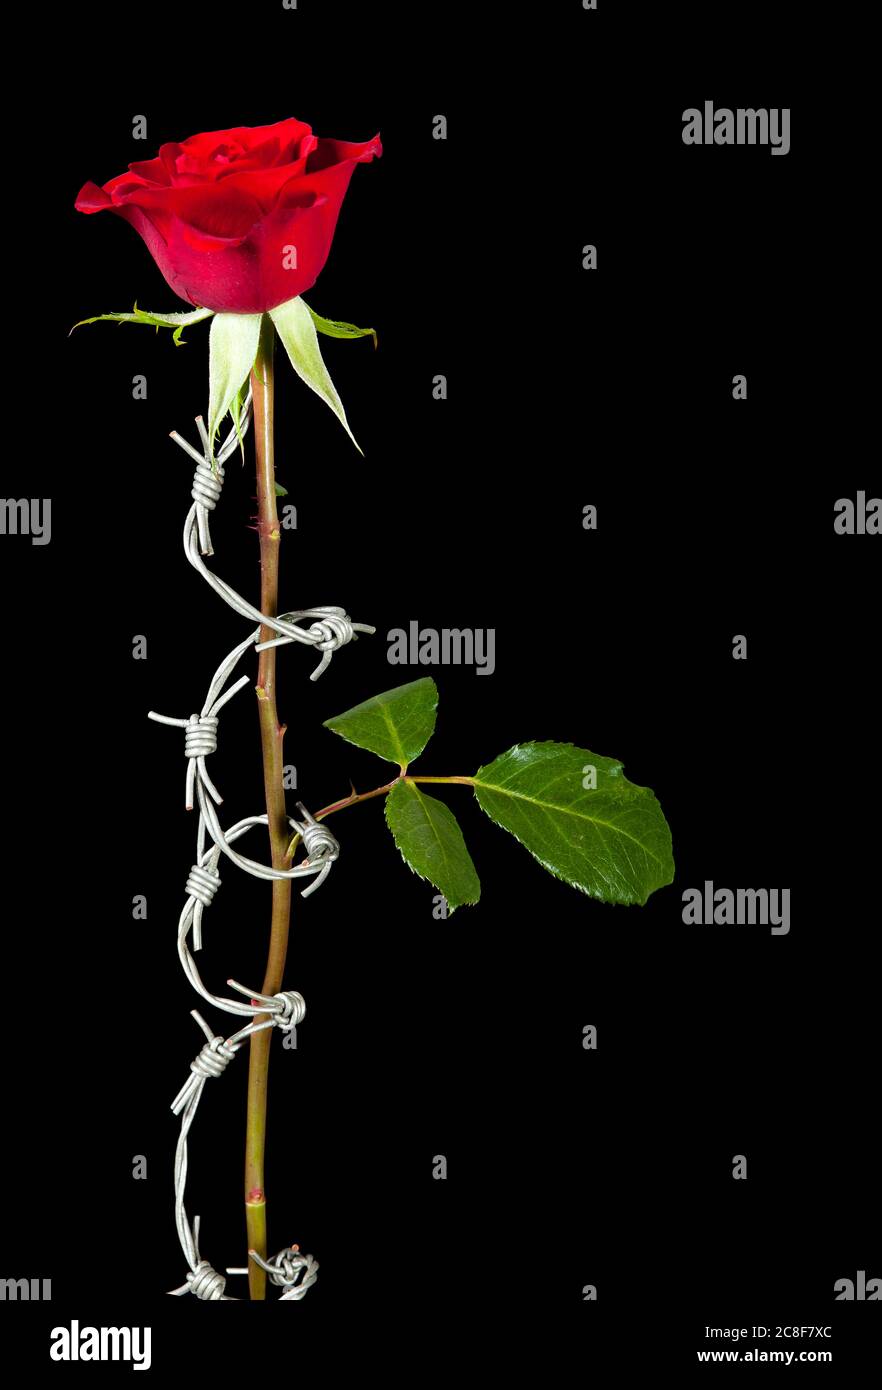 Verbotene Liebe symbolisiert durch Stacheldraht, der sich um eine Rose rollt Stockfoto